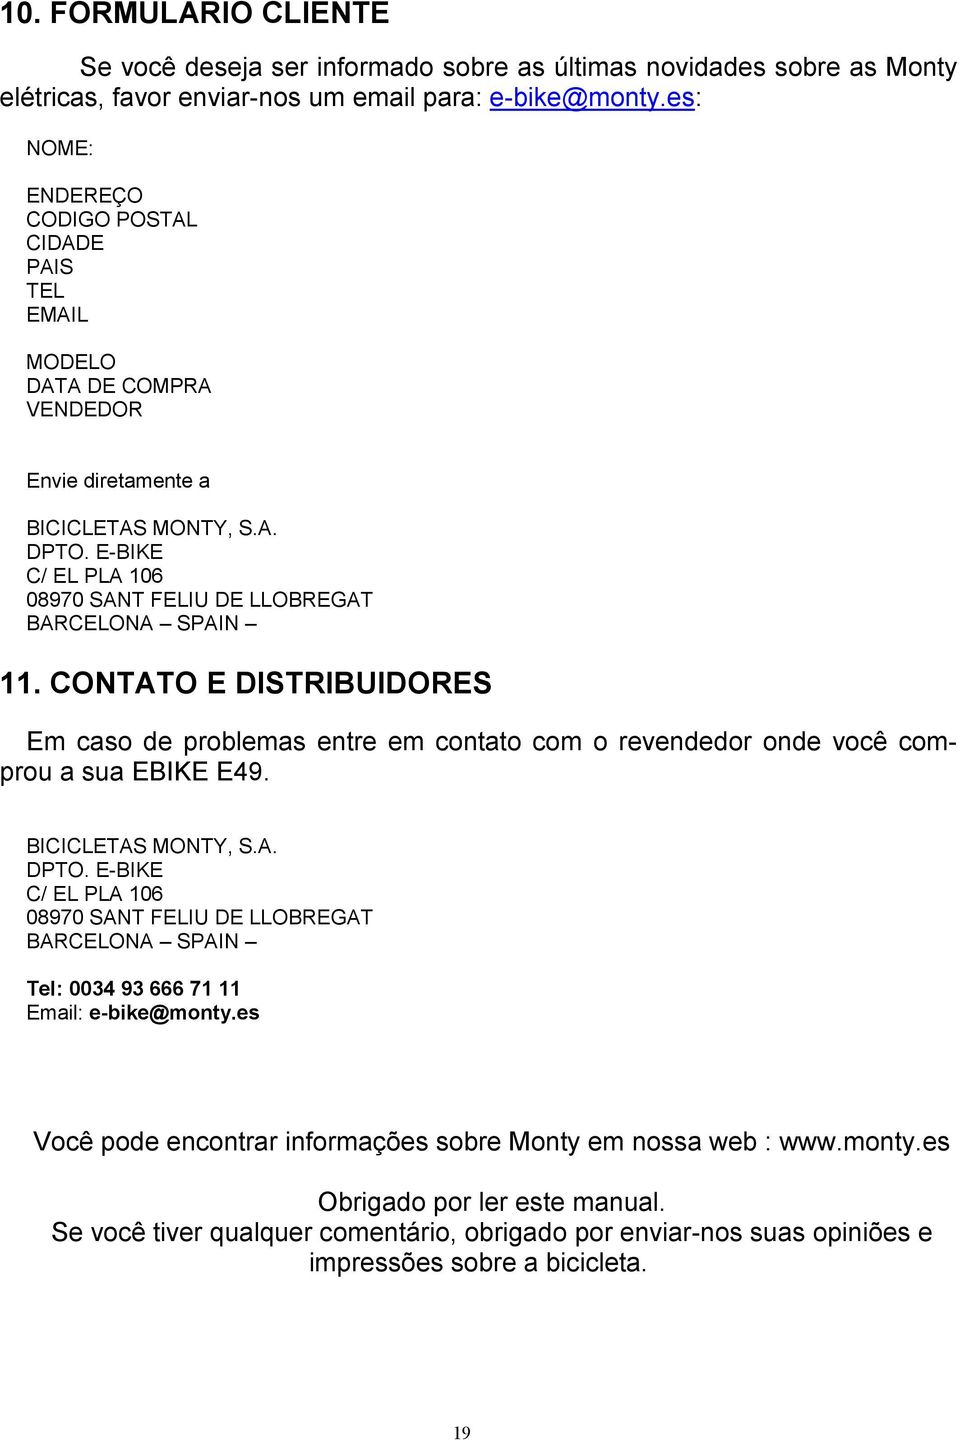 E-BIKE C/ EL PLA 106 08970 SANT FELIU DE LLOBREGAT BARCELONA SPAIN 11. CONTATO E DISTRIBUIDORES Em caso de problemas entre em contato com o revendedor onde você comprou a sua EBIKE E49.